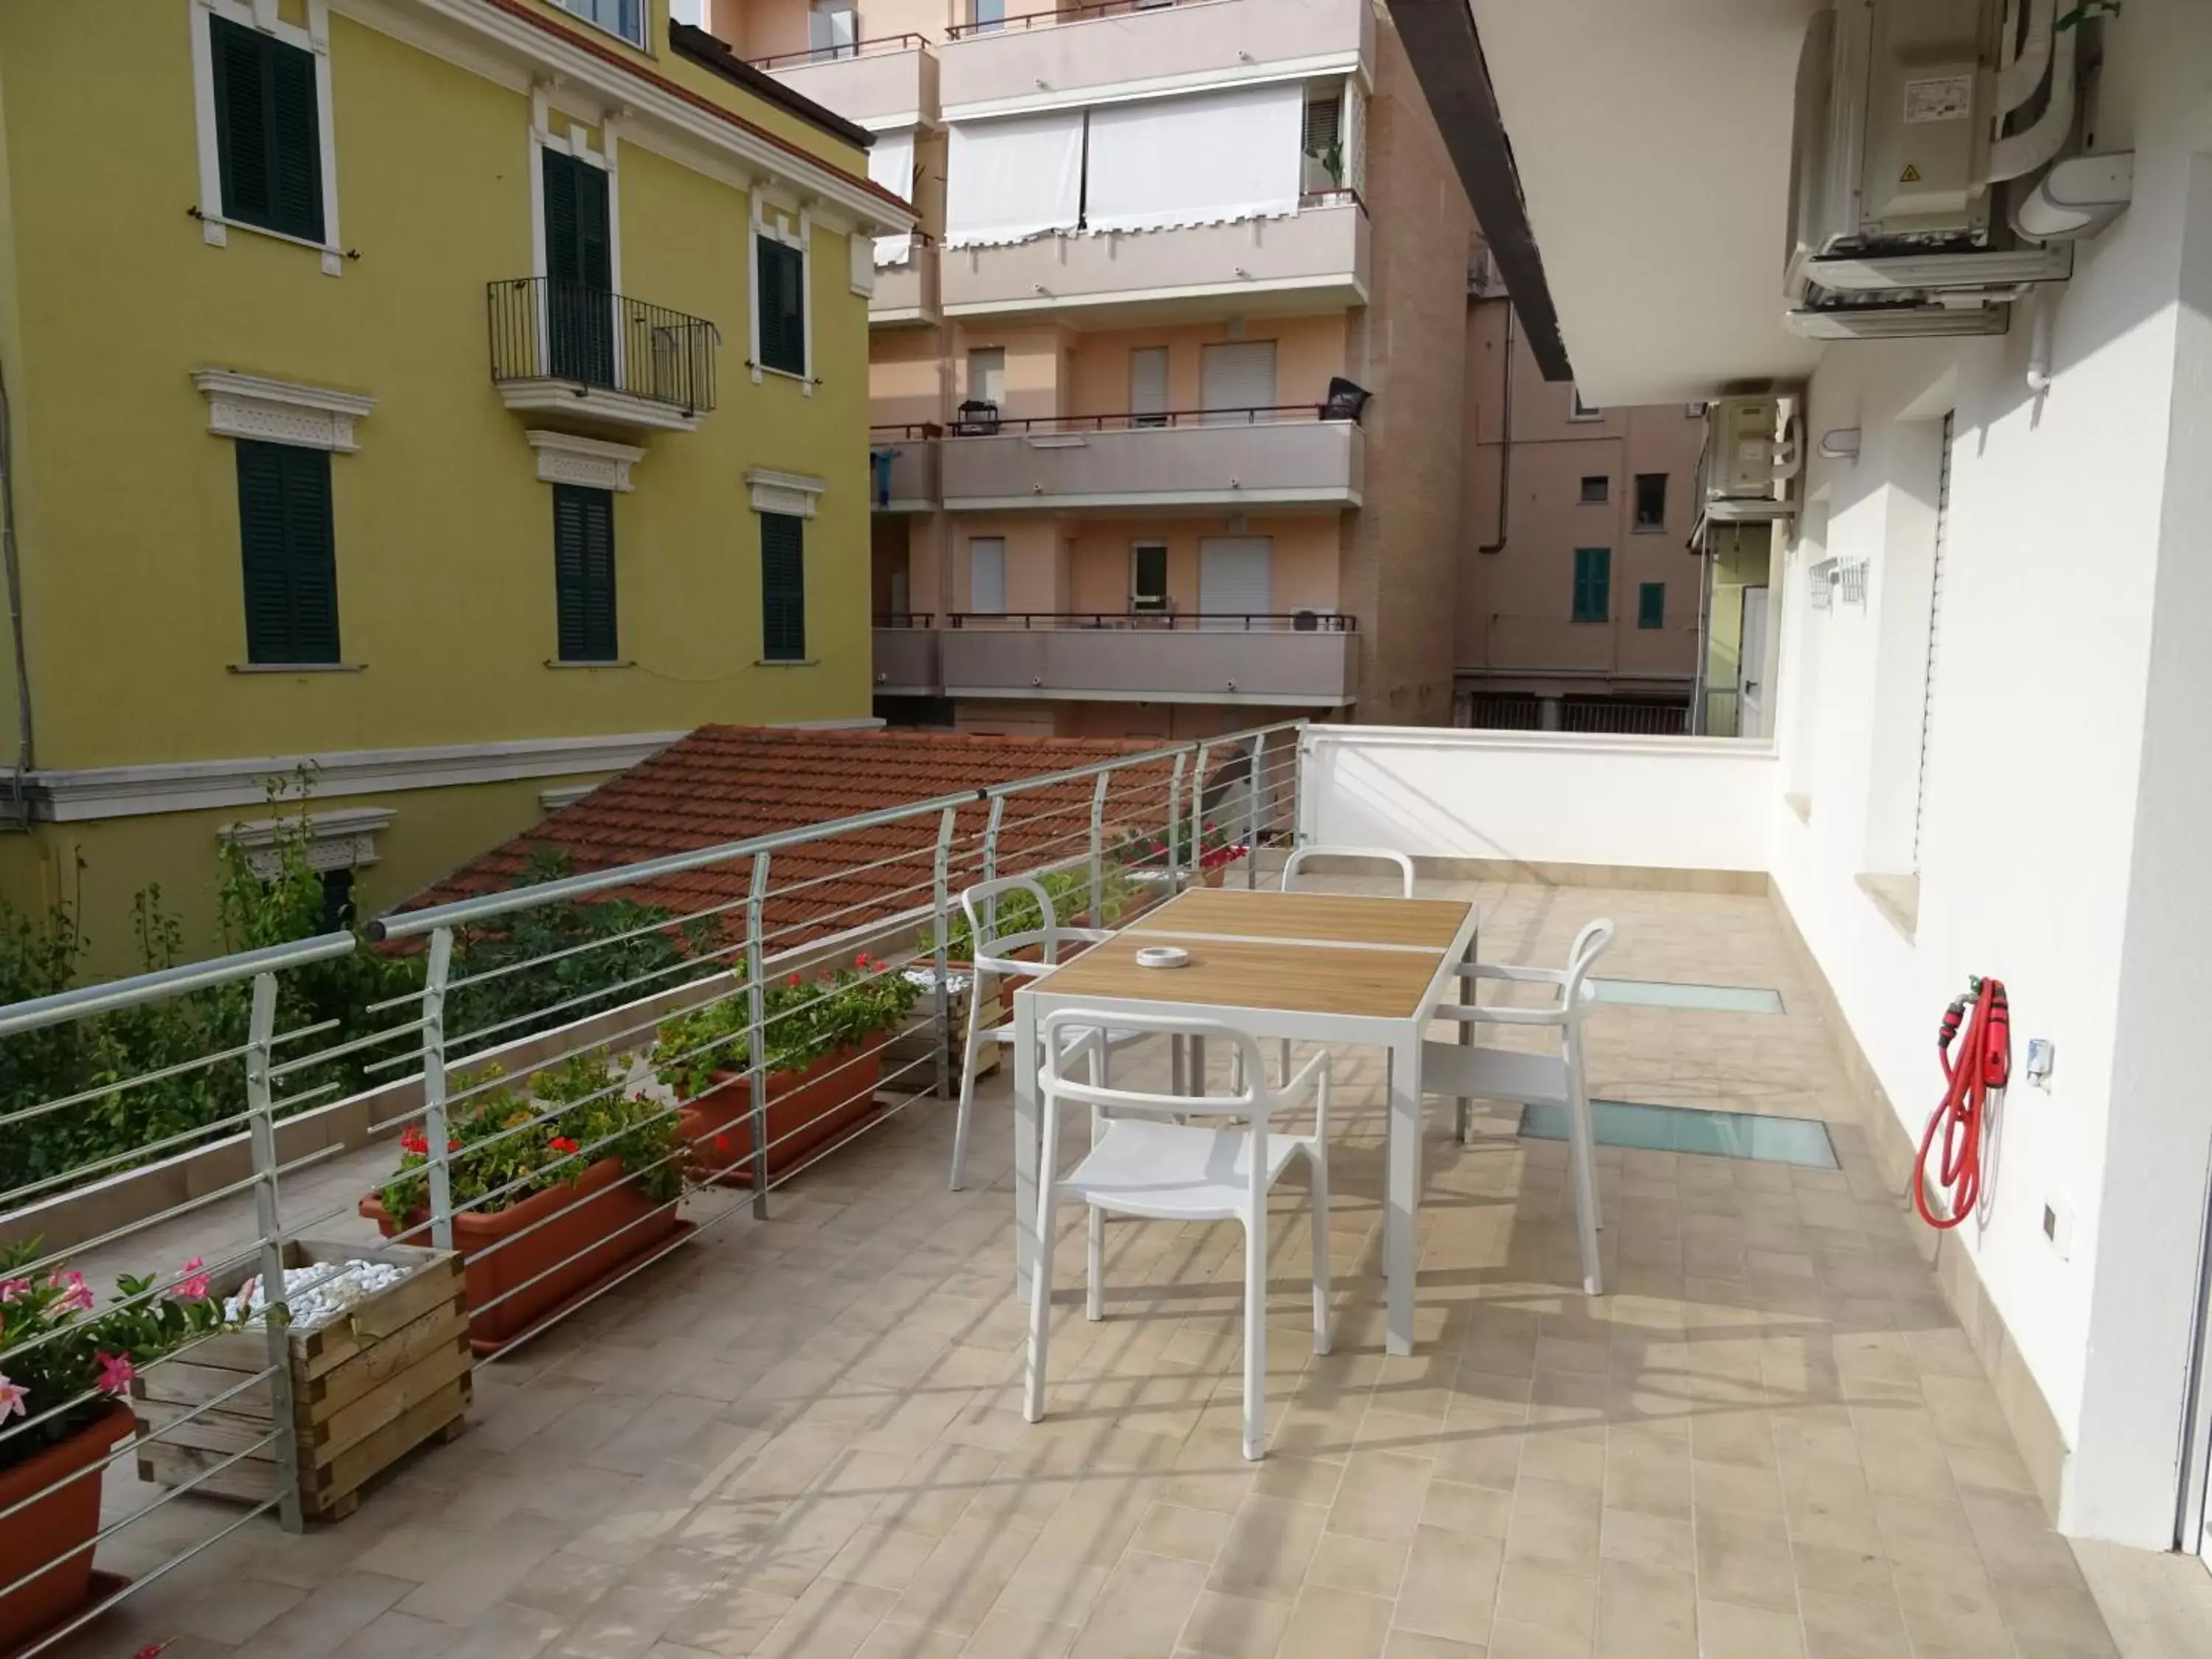 Balcony/Terrace in Meeting